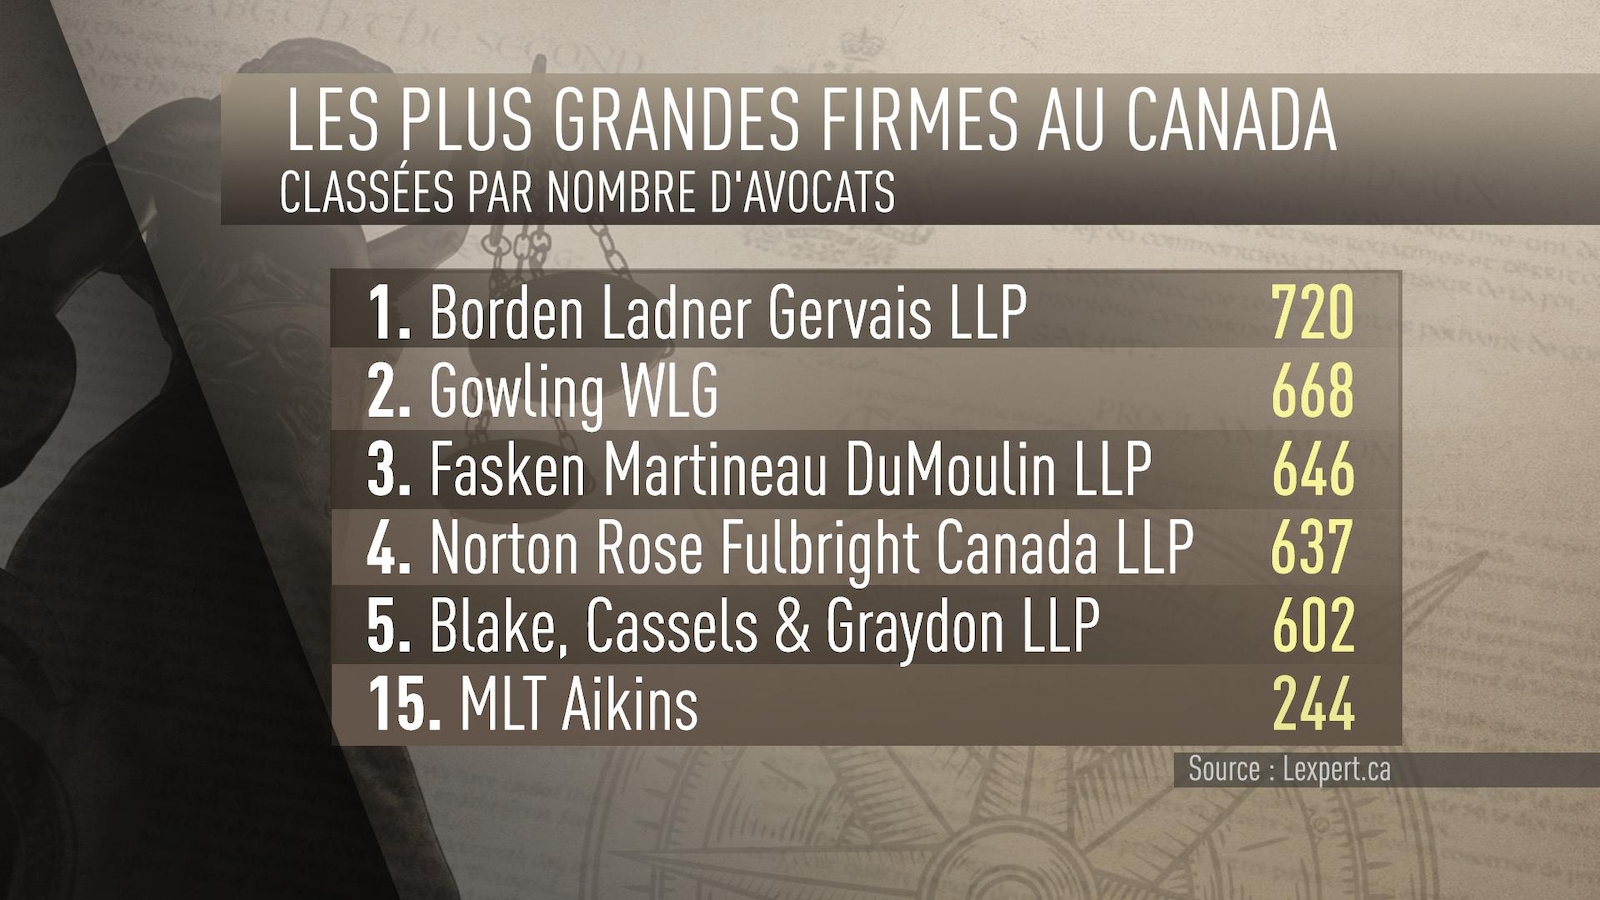 Seule une firme d'avocats présente au Manitoba, MLT Aikins, se classe au sein des 30 plus grandes firmes au Canada.